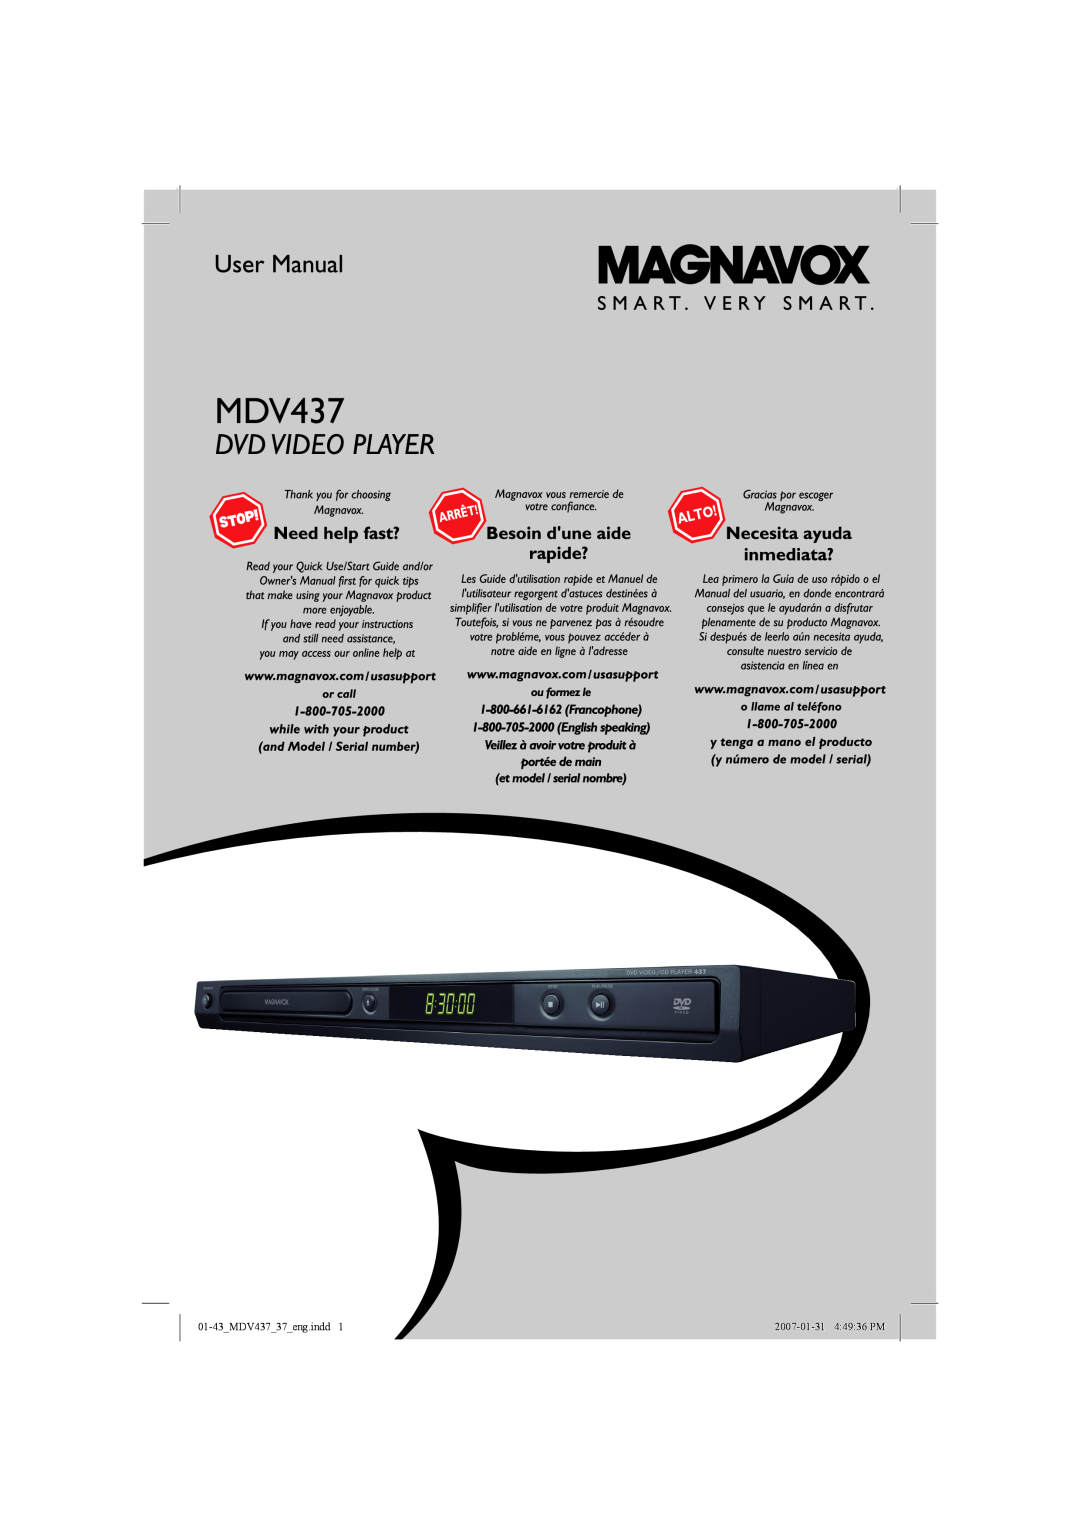 Magnavox manual 01-43MDV43737eng.indd, 2007-01-31 44936 PM 